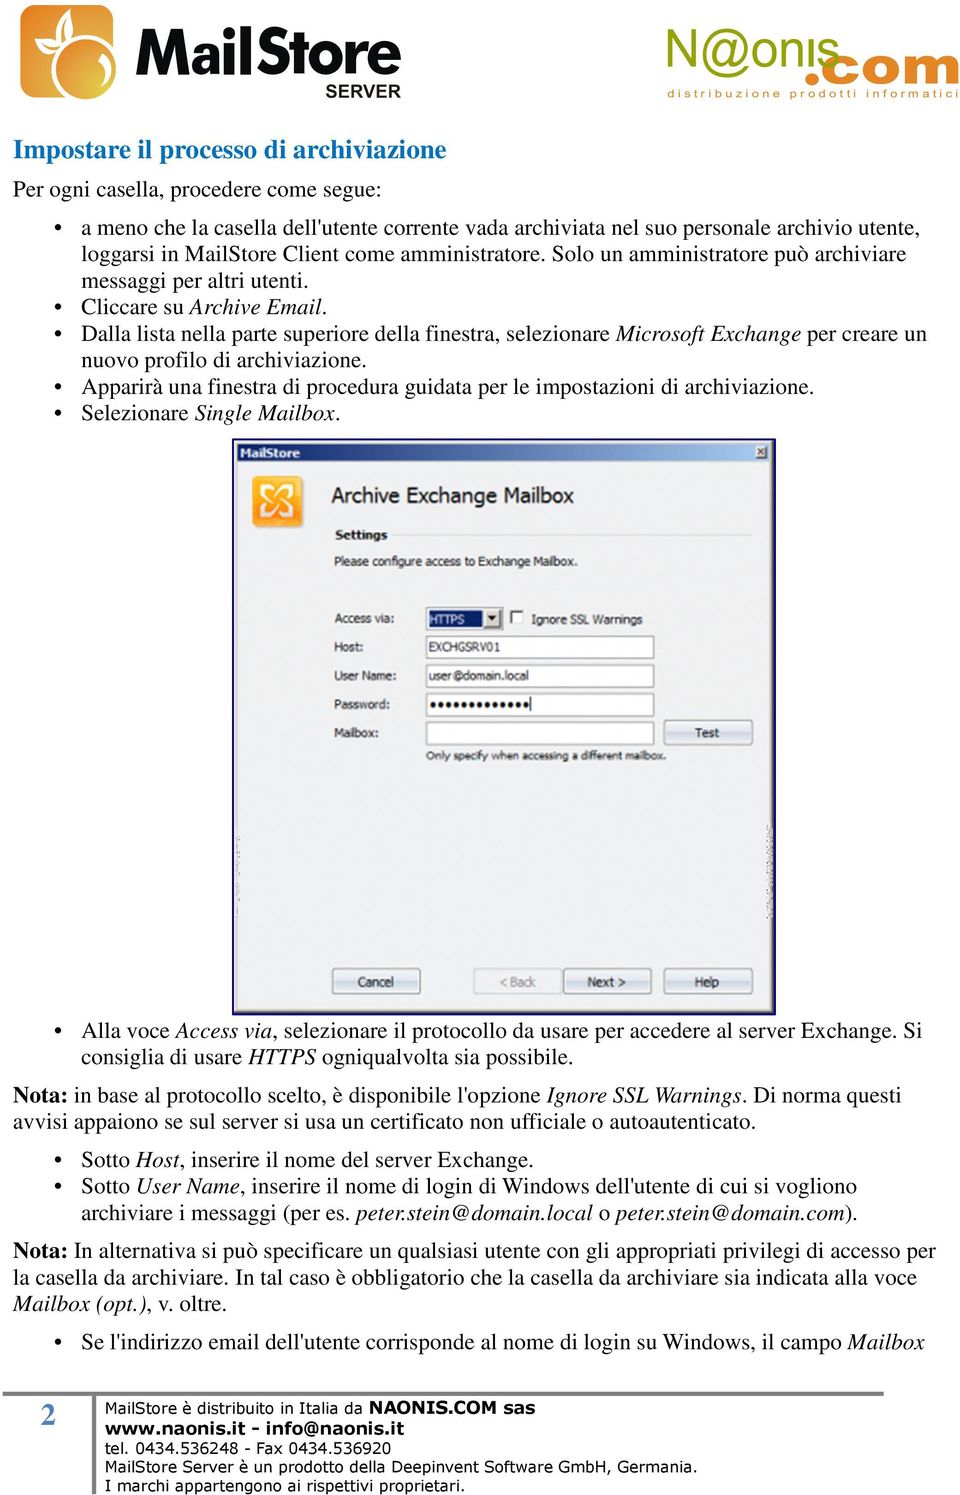 Dalla lista nella parte superiore della finestra, selezionare Microsoft Exchange per creare un nuovo profilo di archiviazione.